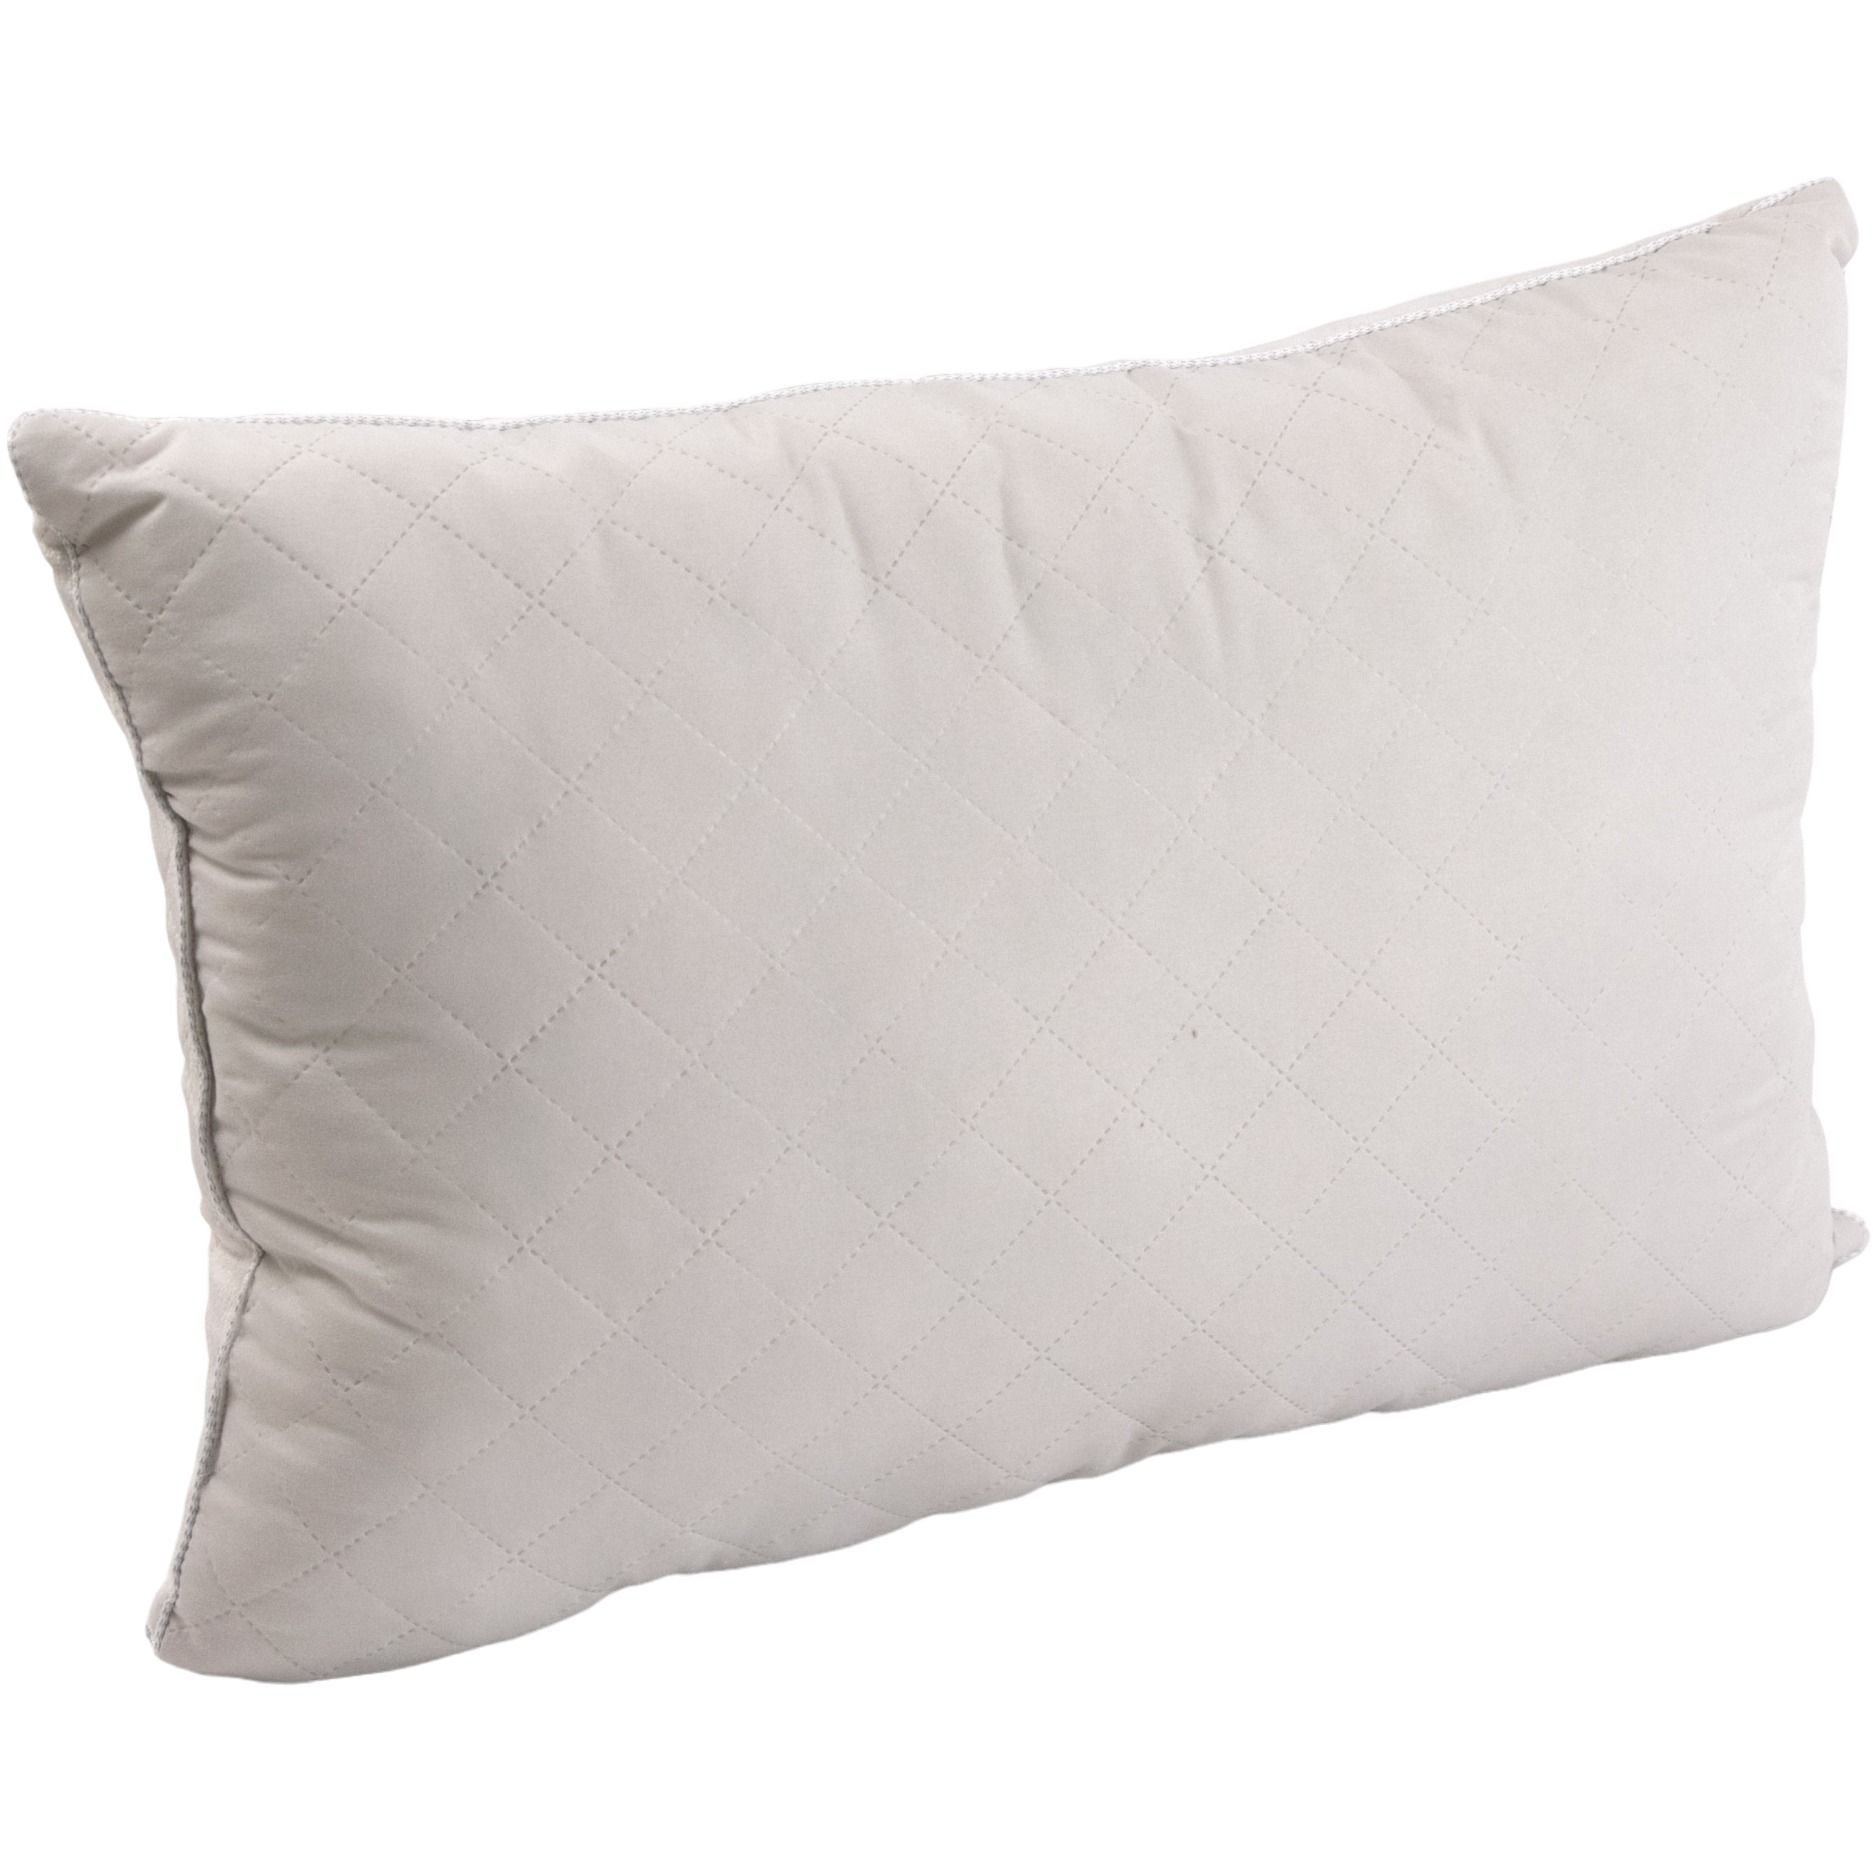 Набор силиконовый Руно Soft Pearl, бежевый: одеяло, 205х140 см + подушка, 50х70 см (924.55_Soft Pearl) - фото 3